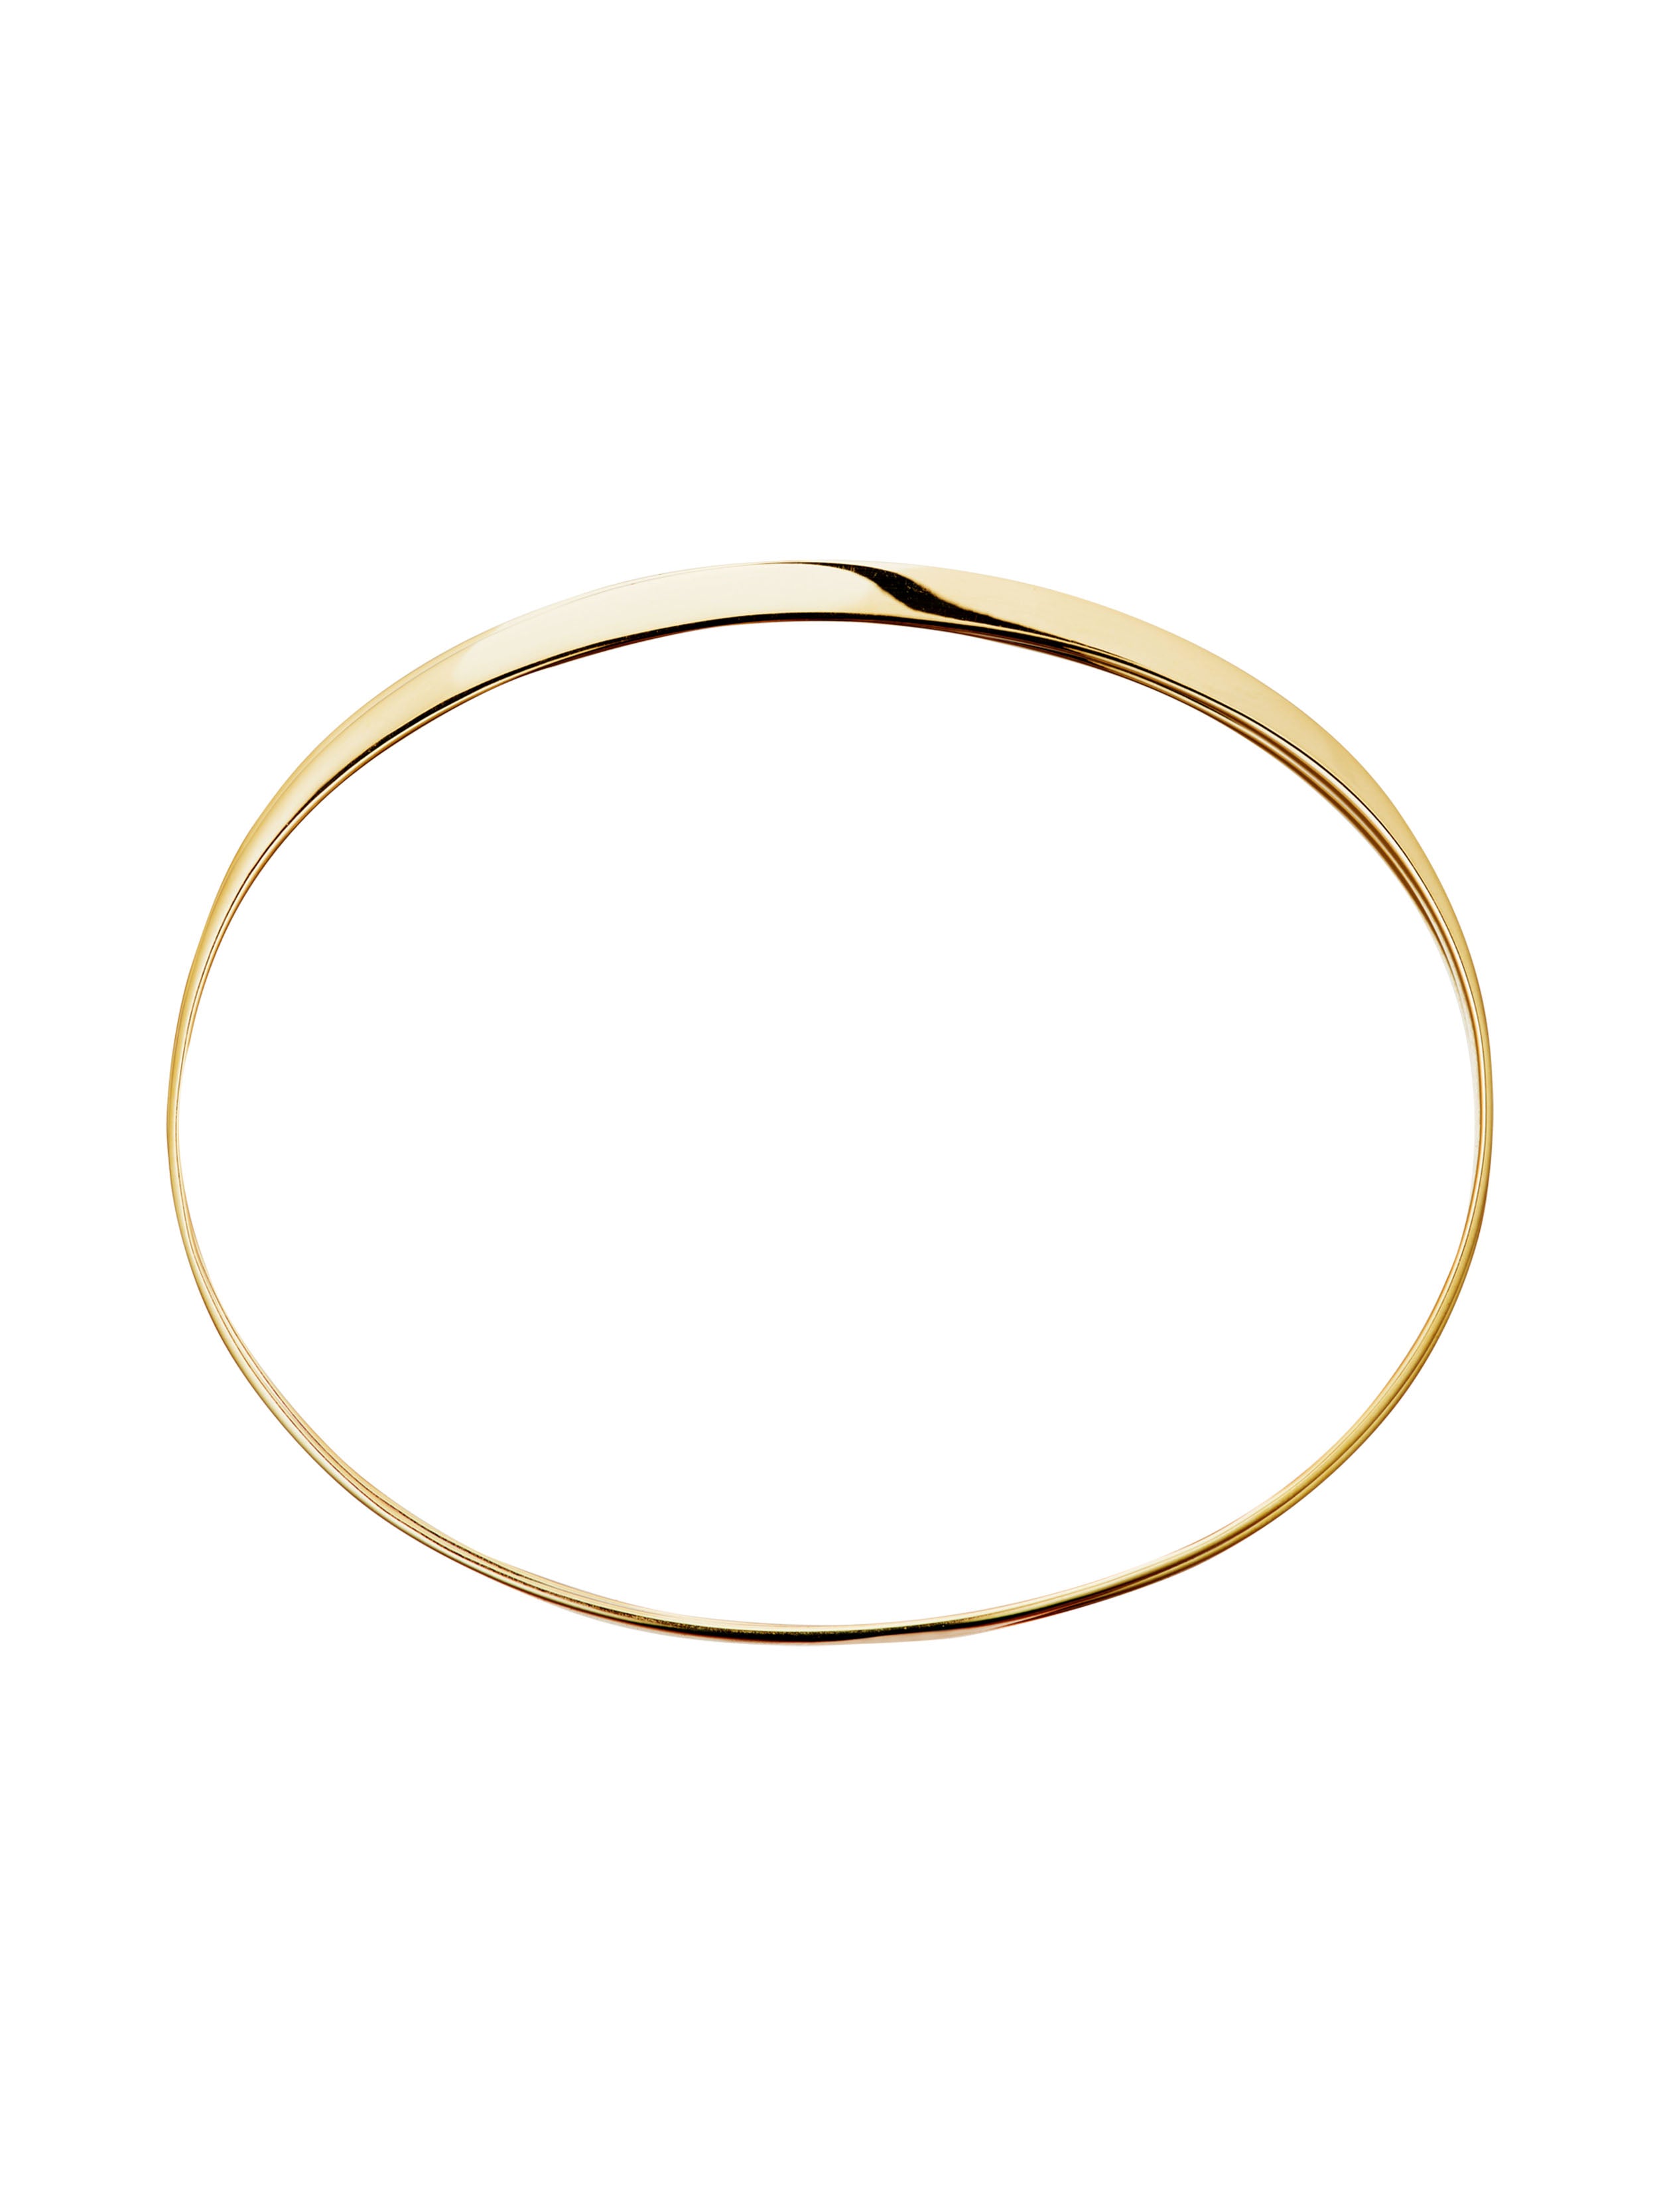 KINRADEN APS BLAZE SMALL Bracelet - 18k gold Bracelets